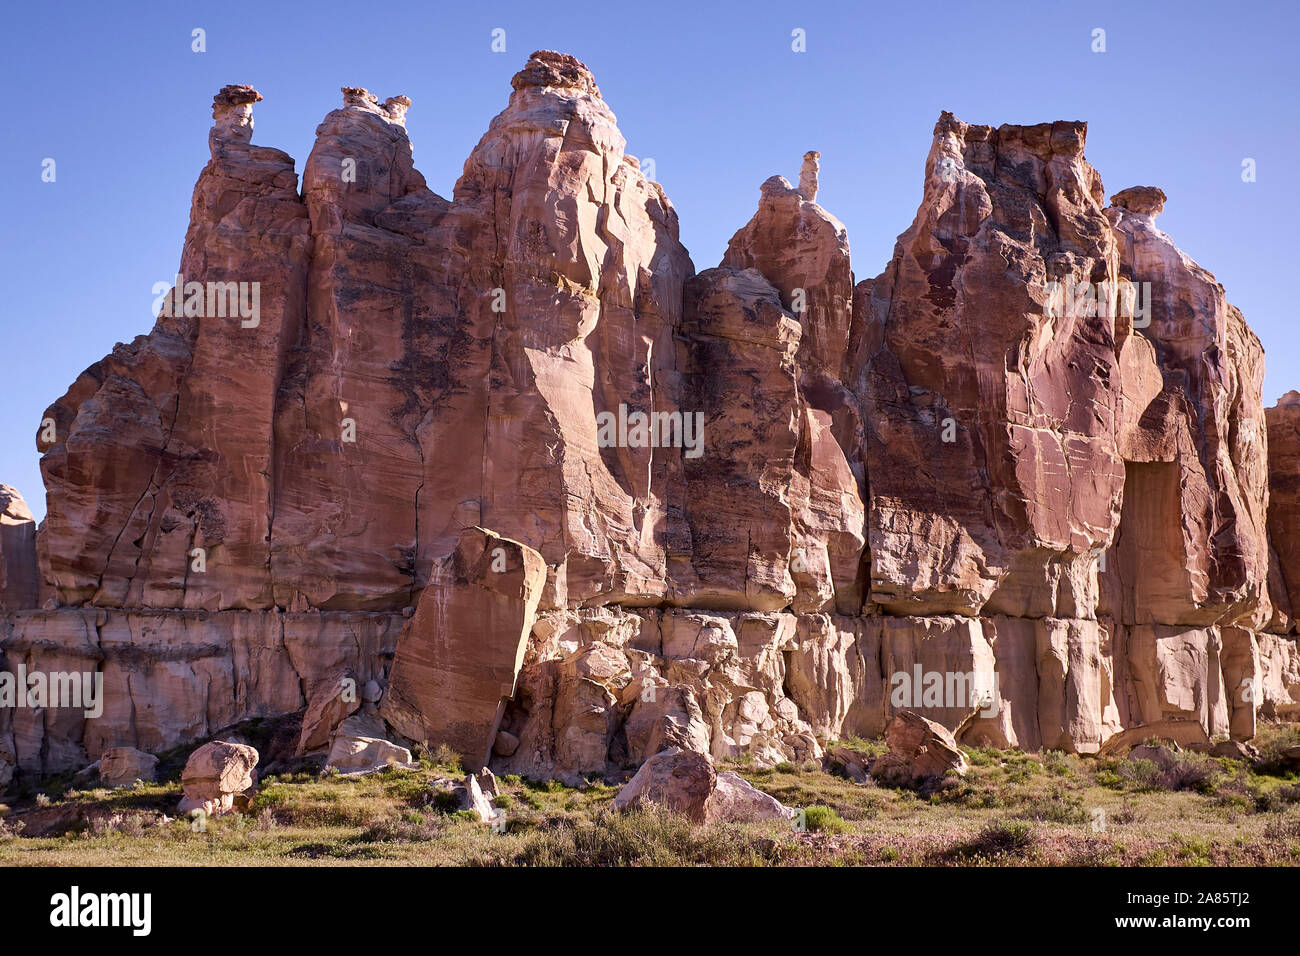 The White Rocks in Utah, USA Stock Photo